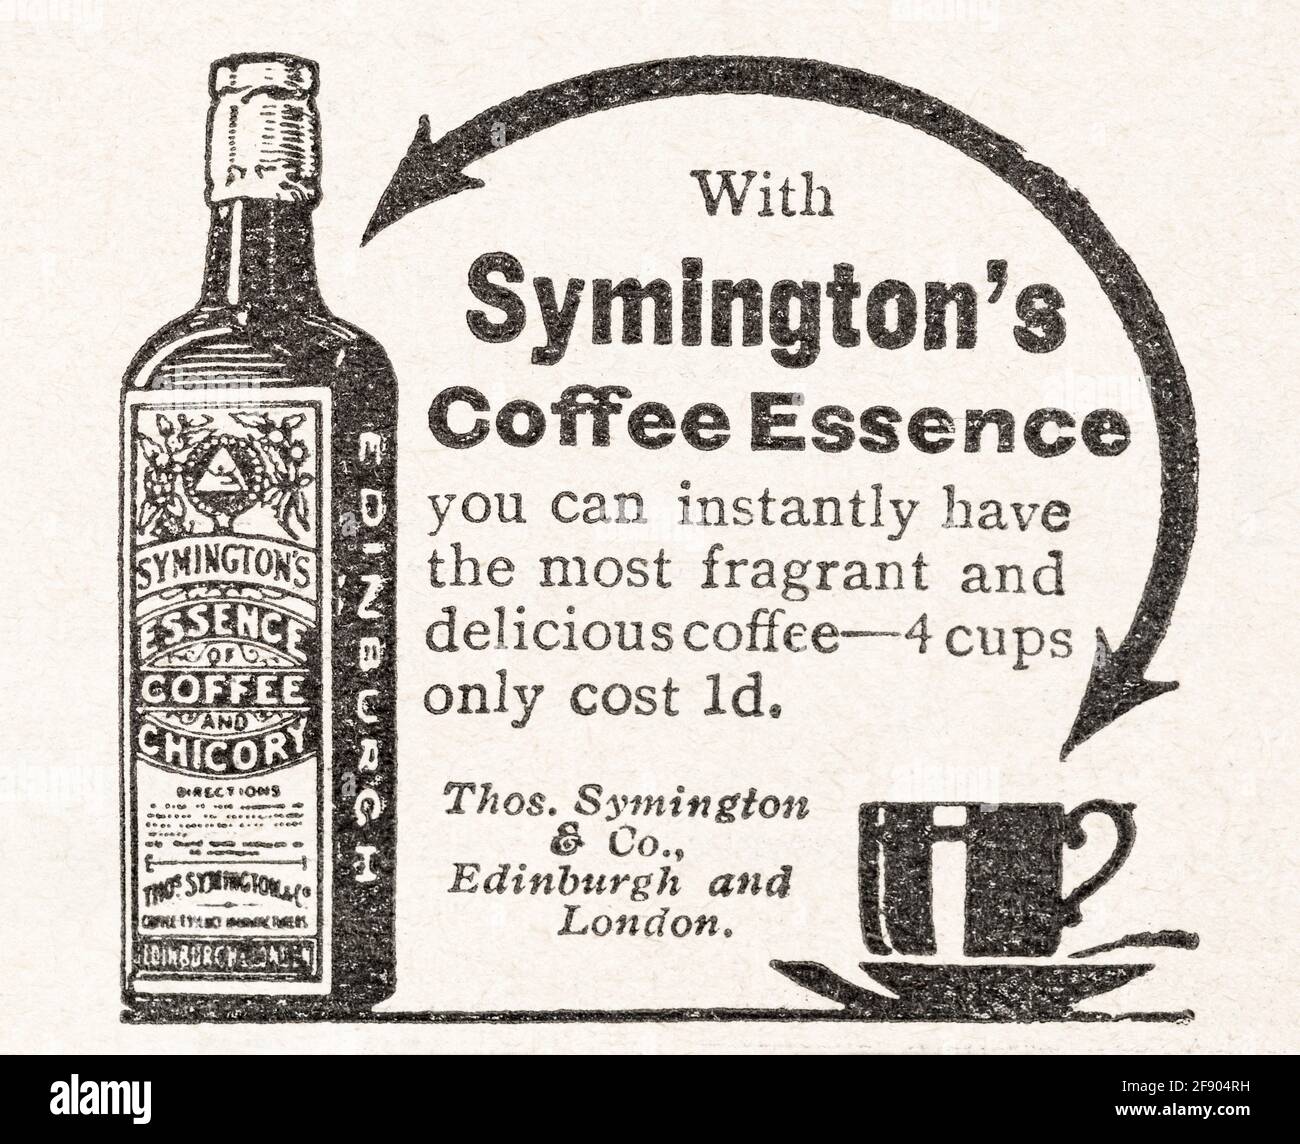 Publicité de l'ancien magazine Edwardian vintage pour Symingtons Coffee essence de 1911. Histoire de la publicité, histoire des marques de café. Banque D'Images